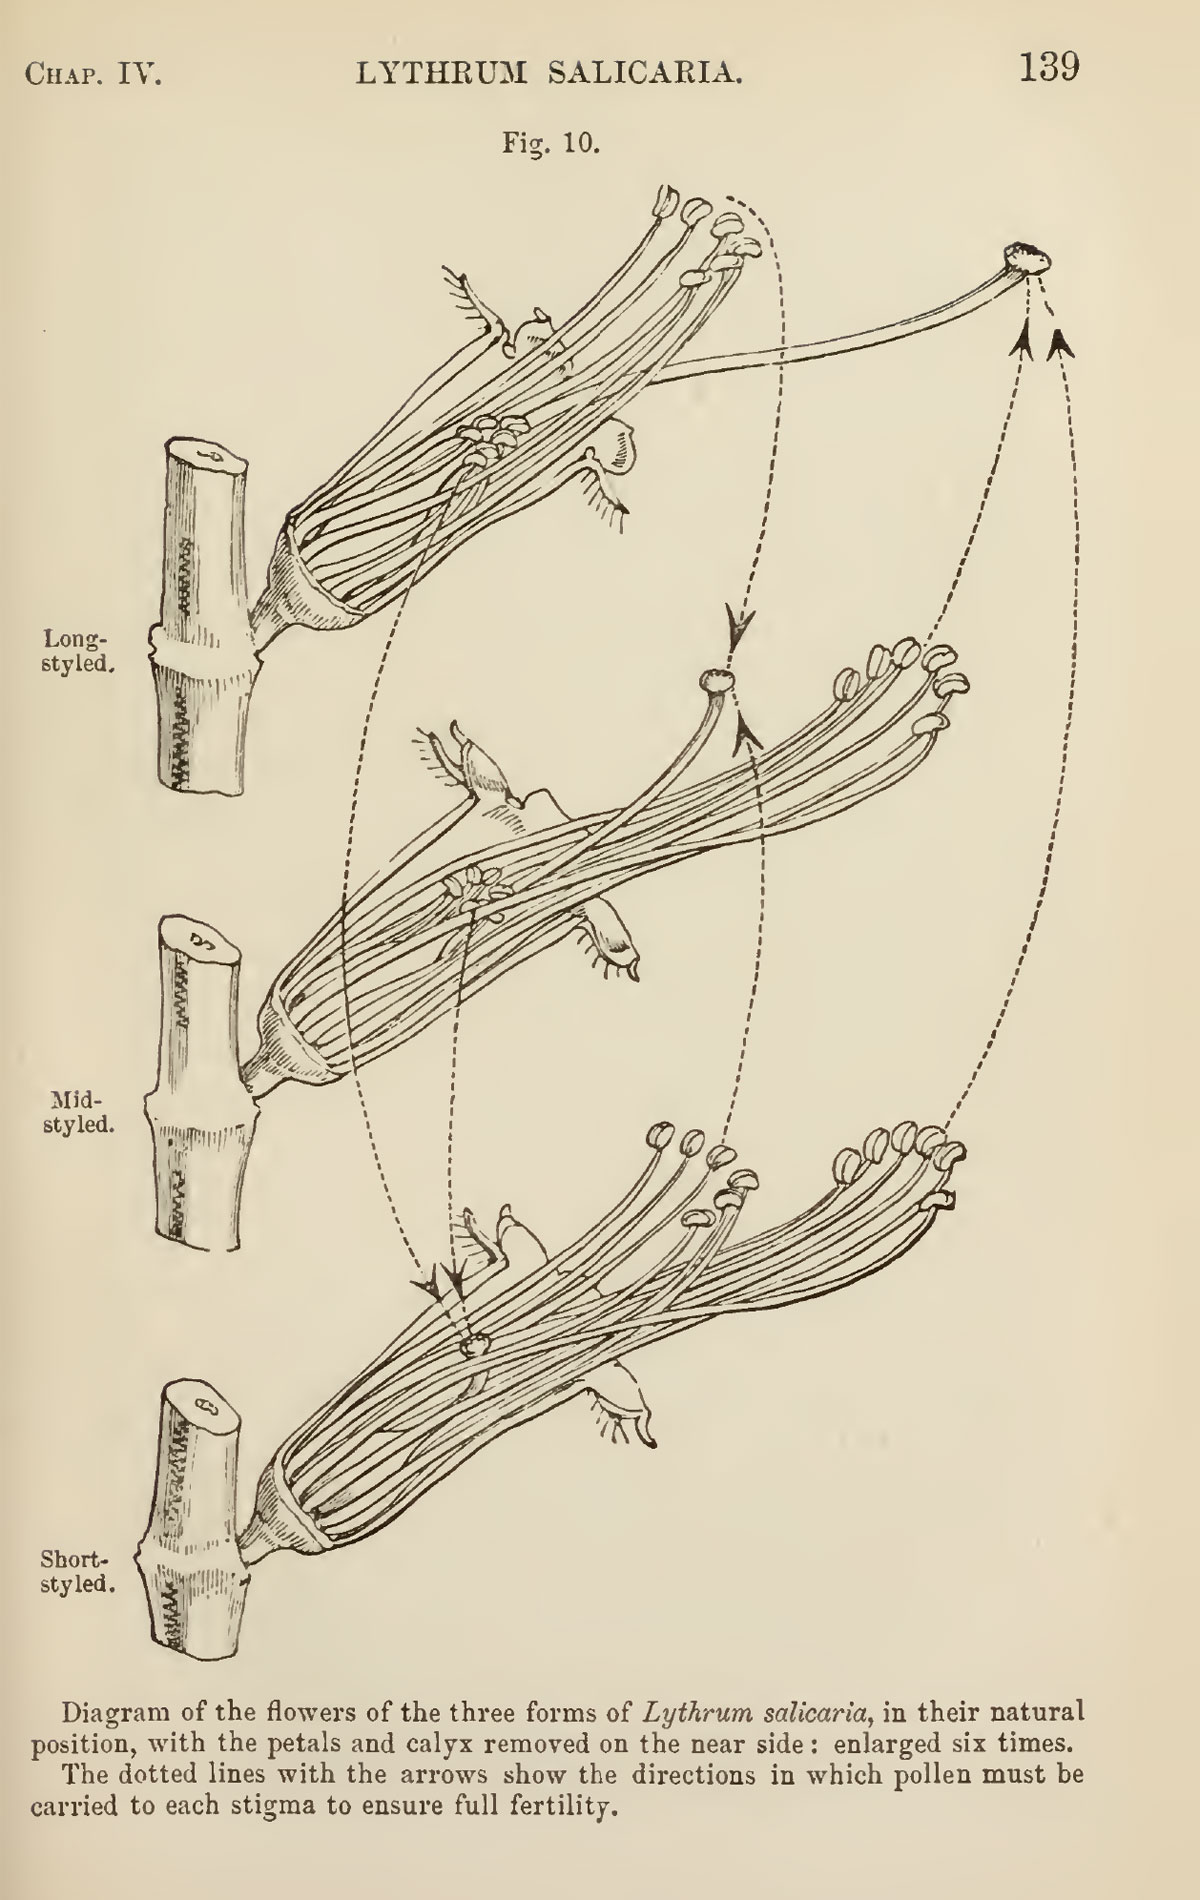 Иллюстрация из книги Чарльза Дарвина, посвящённая триморфности цветков дербенника иволистного.